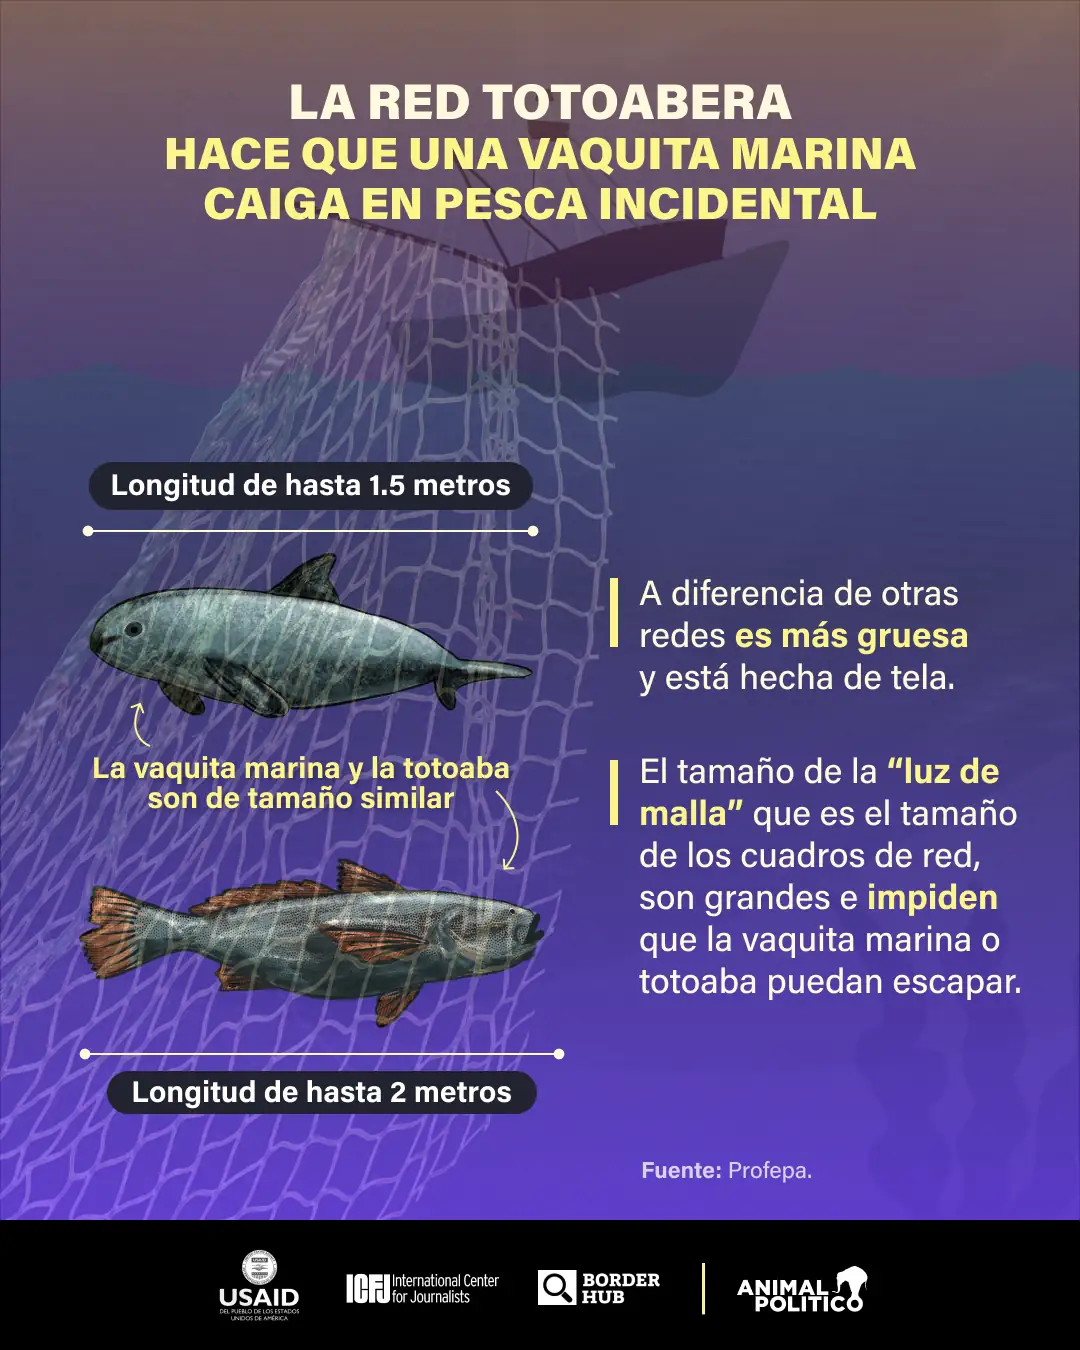 redes de pesca abandonadas en el mar carecen de manejo especial; profepa dice que son almacenadas y trituradas por semar